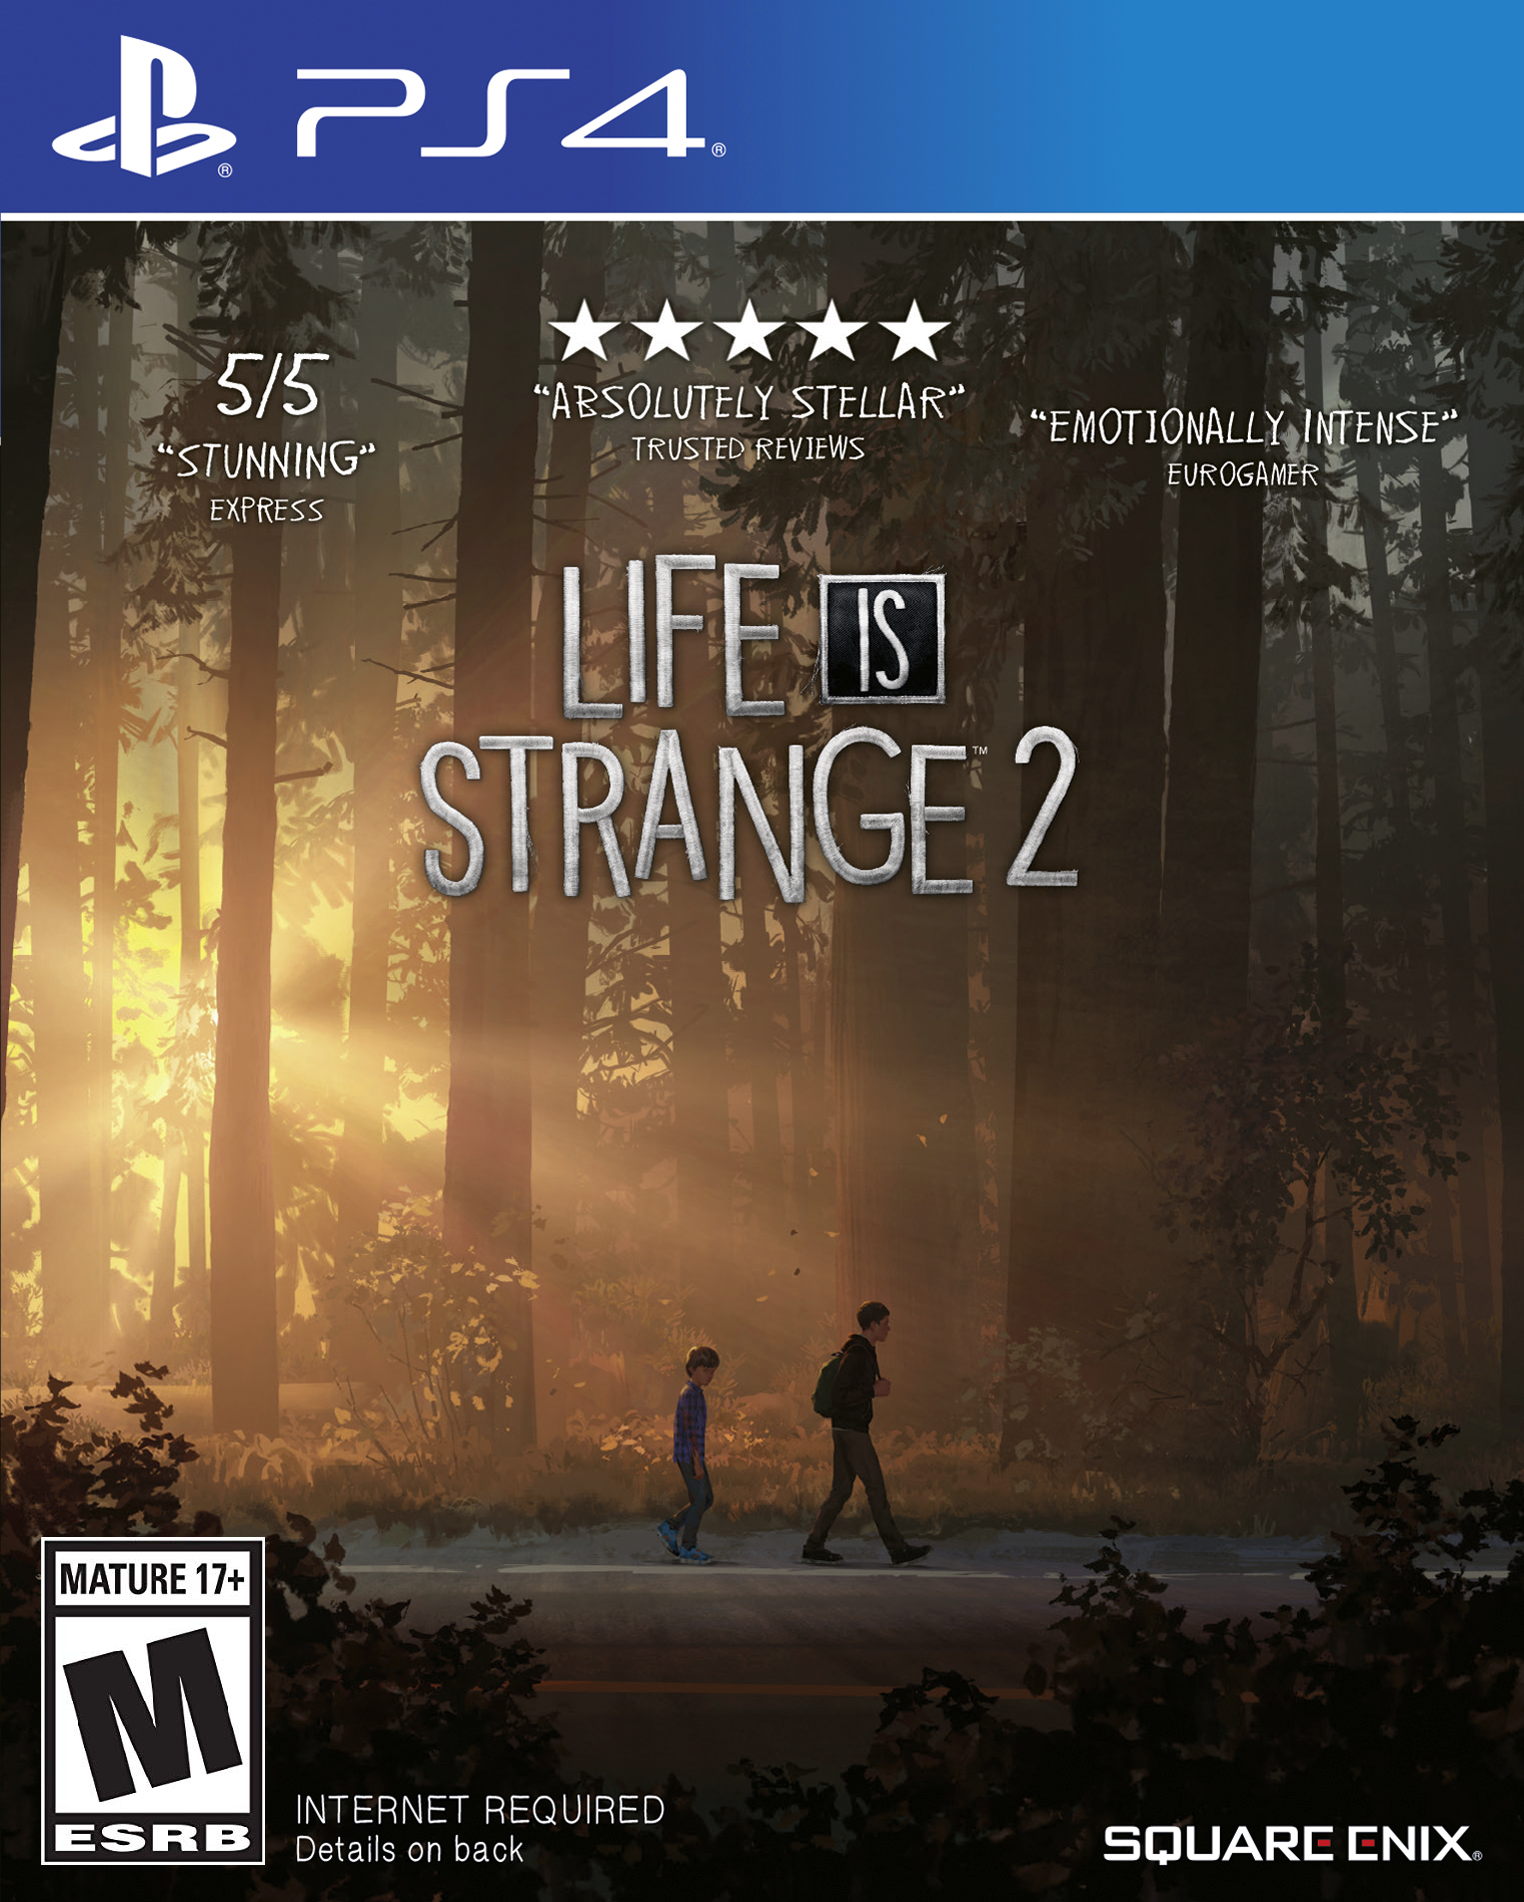 Life Strange 2 for PlayStation